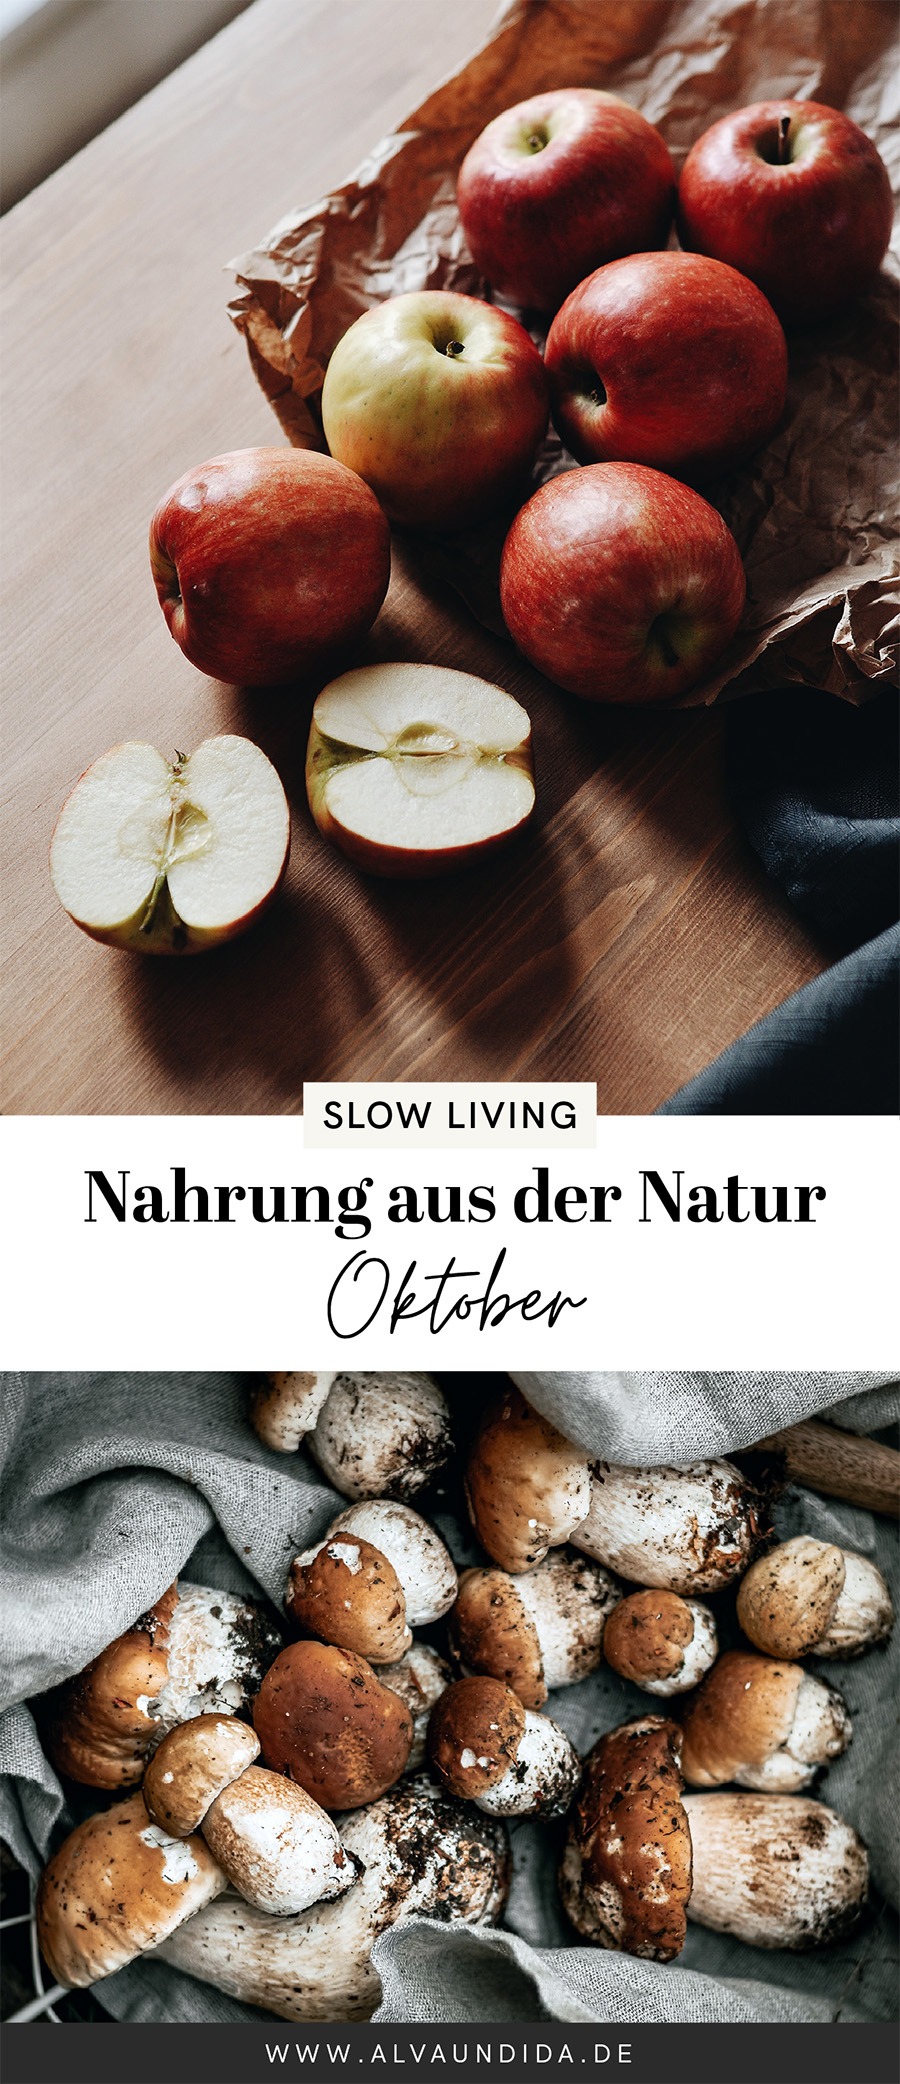 alvaundida_diyblog, natur, nachhaltigkeit, slow living, Nahrung aus der Natur - Oktober